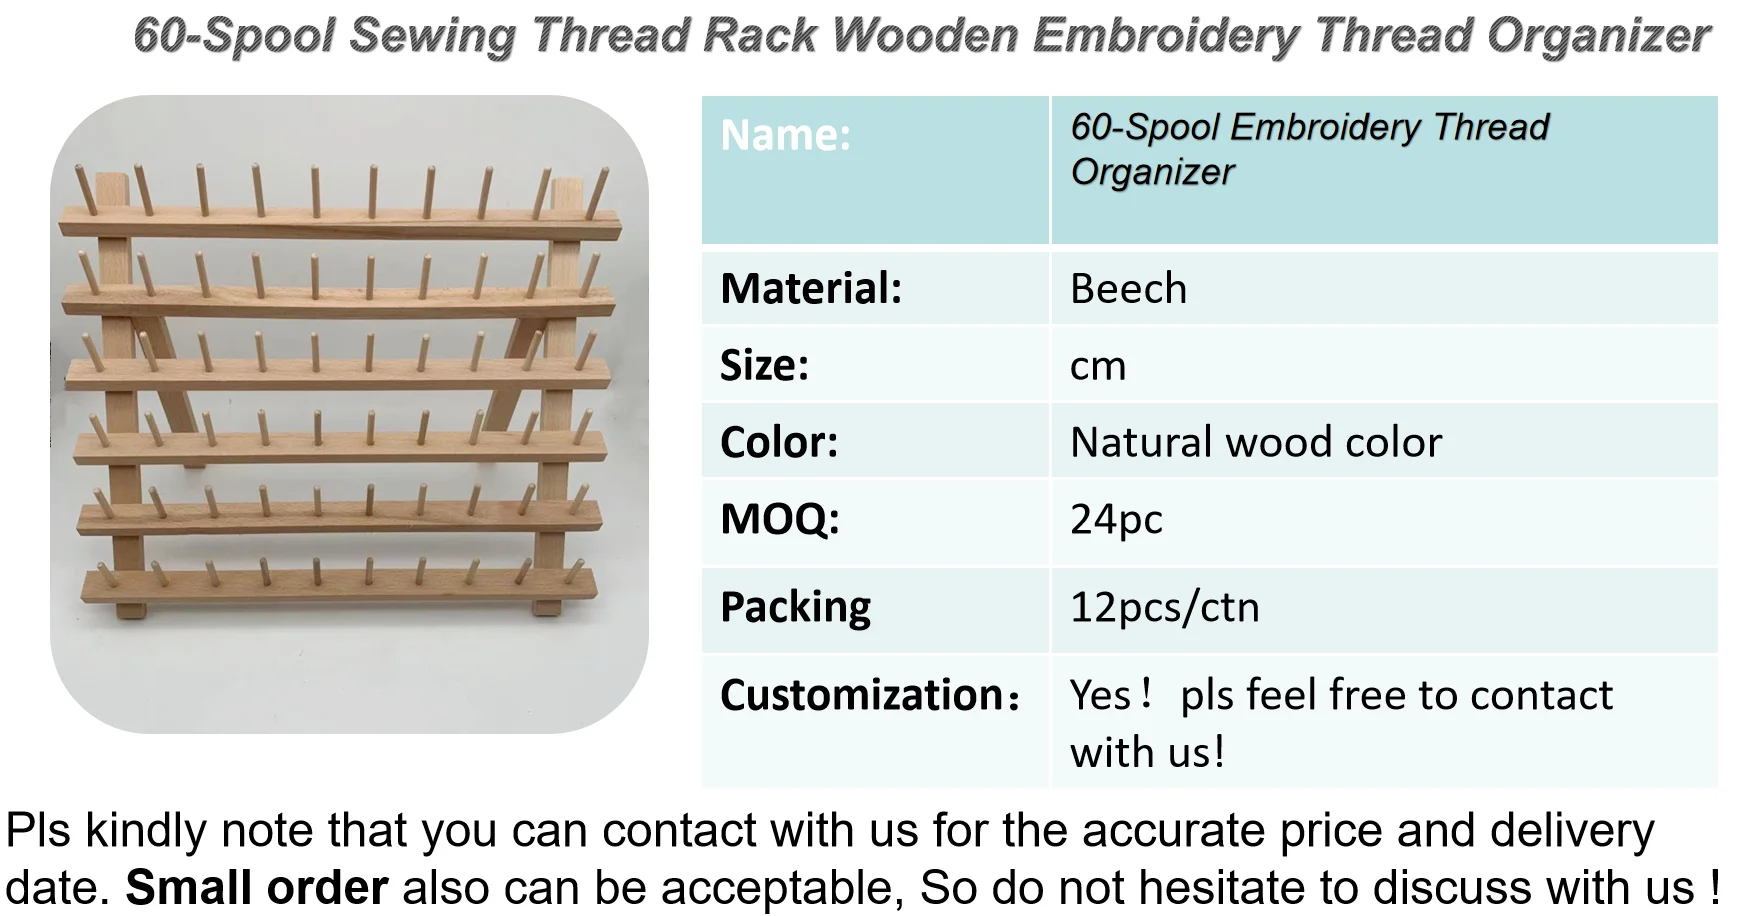 New brothread 2x60 Carretes Organizador de hilo de madera estante de hilo con ganchos para colgar para bordar acolchar y coser hilos 